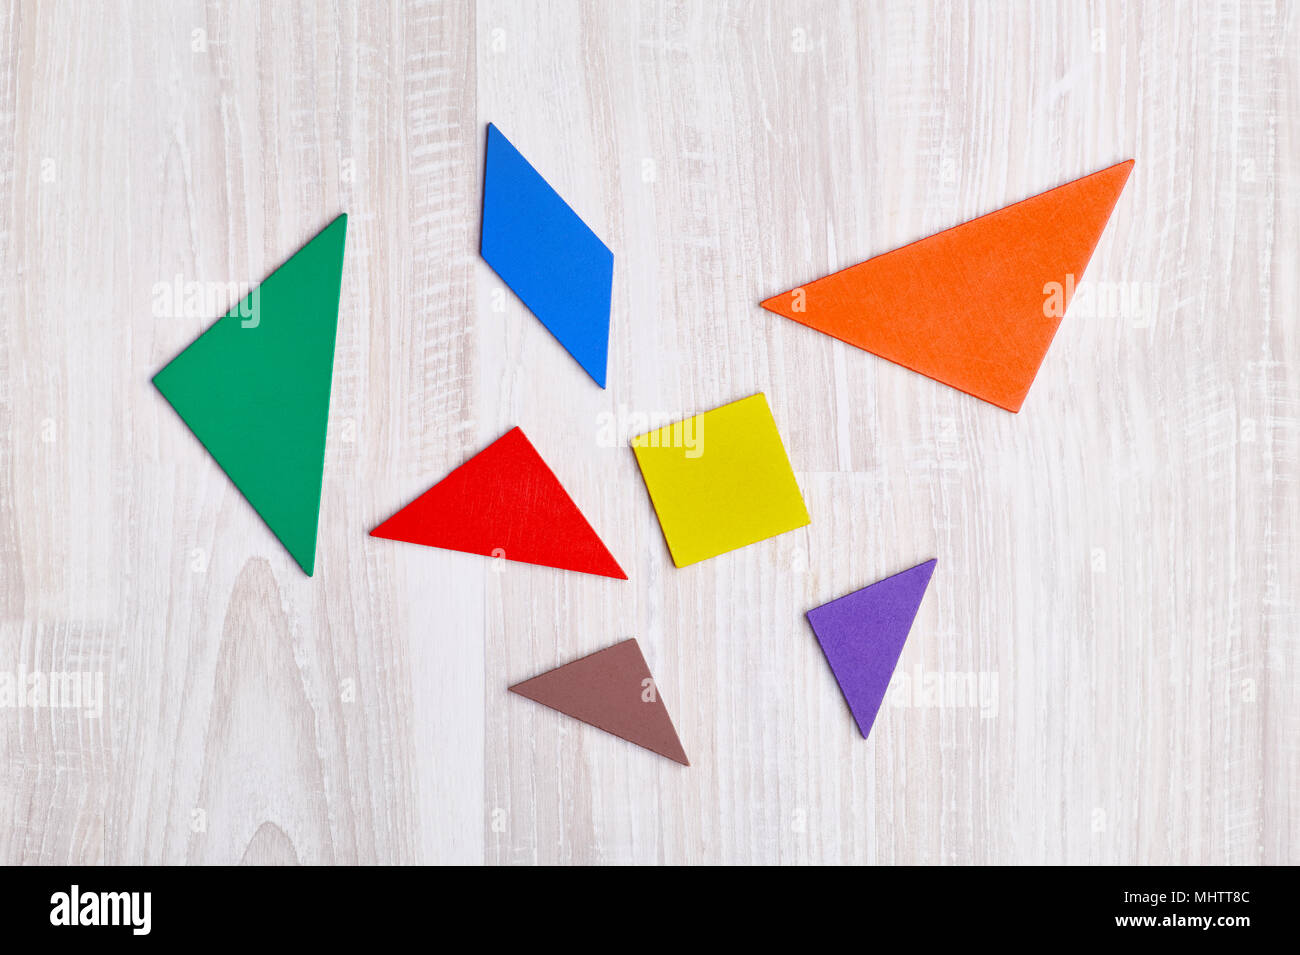 Geometrica colorati i pezzi di un puzzle come triangoli e quadrati parallelogramma, sono sparsi su una luce sullo sfondo di legno Foto Stock